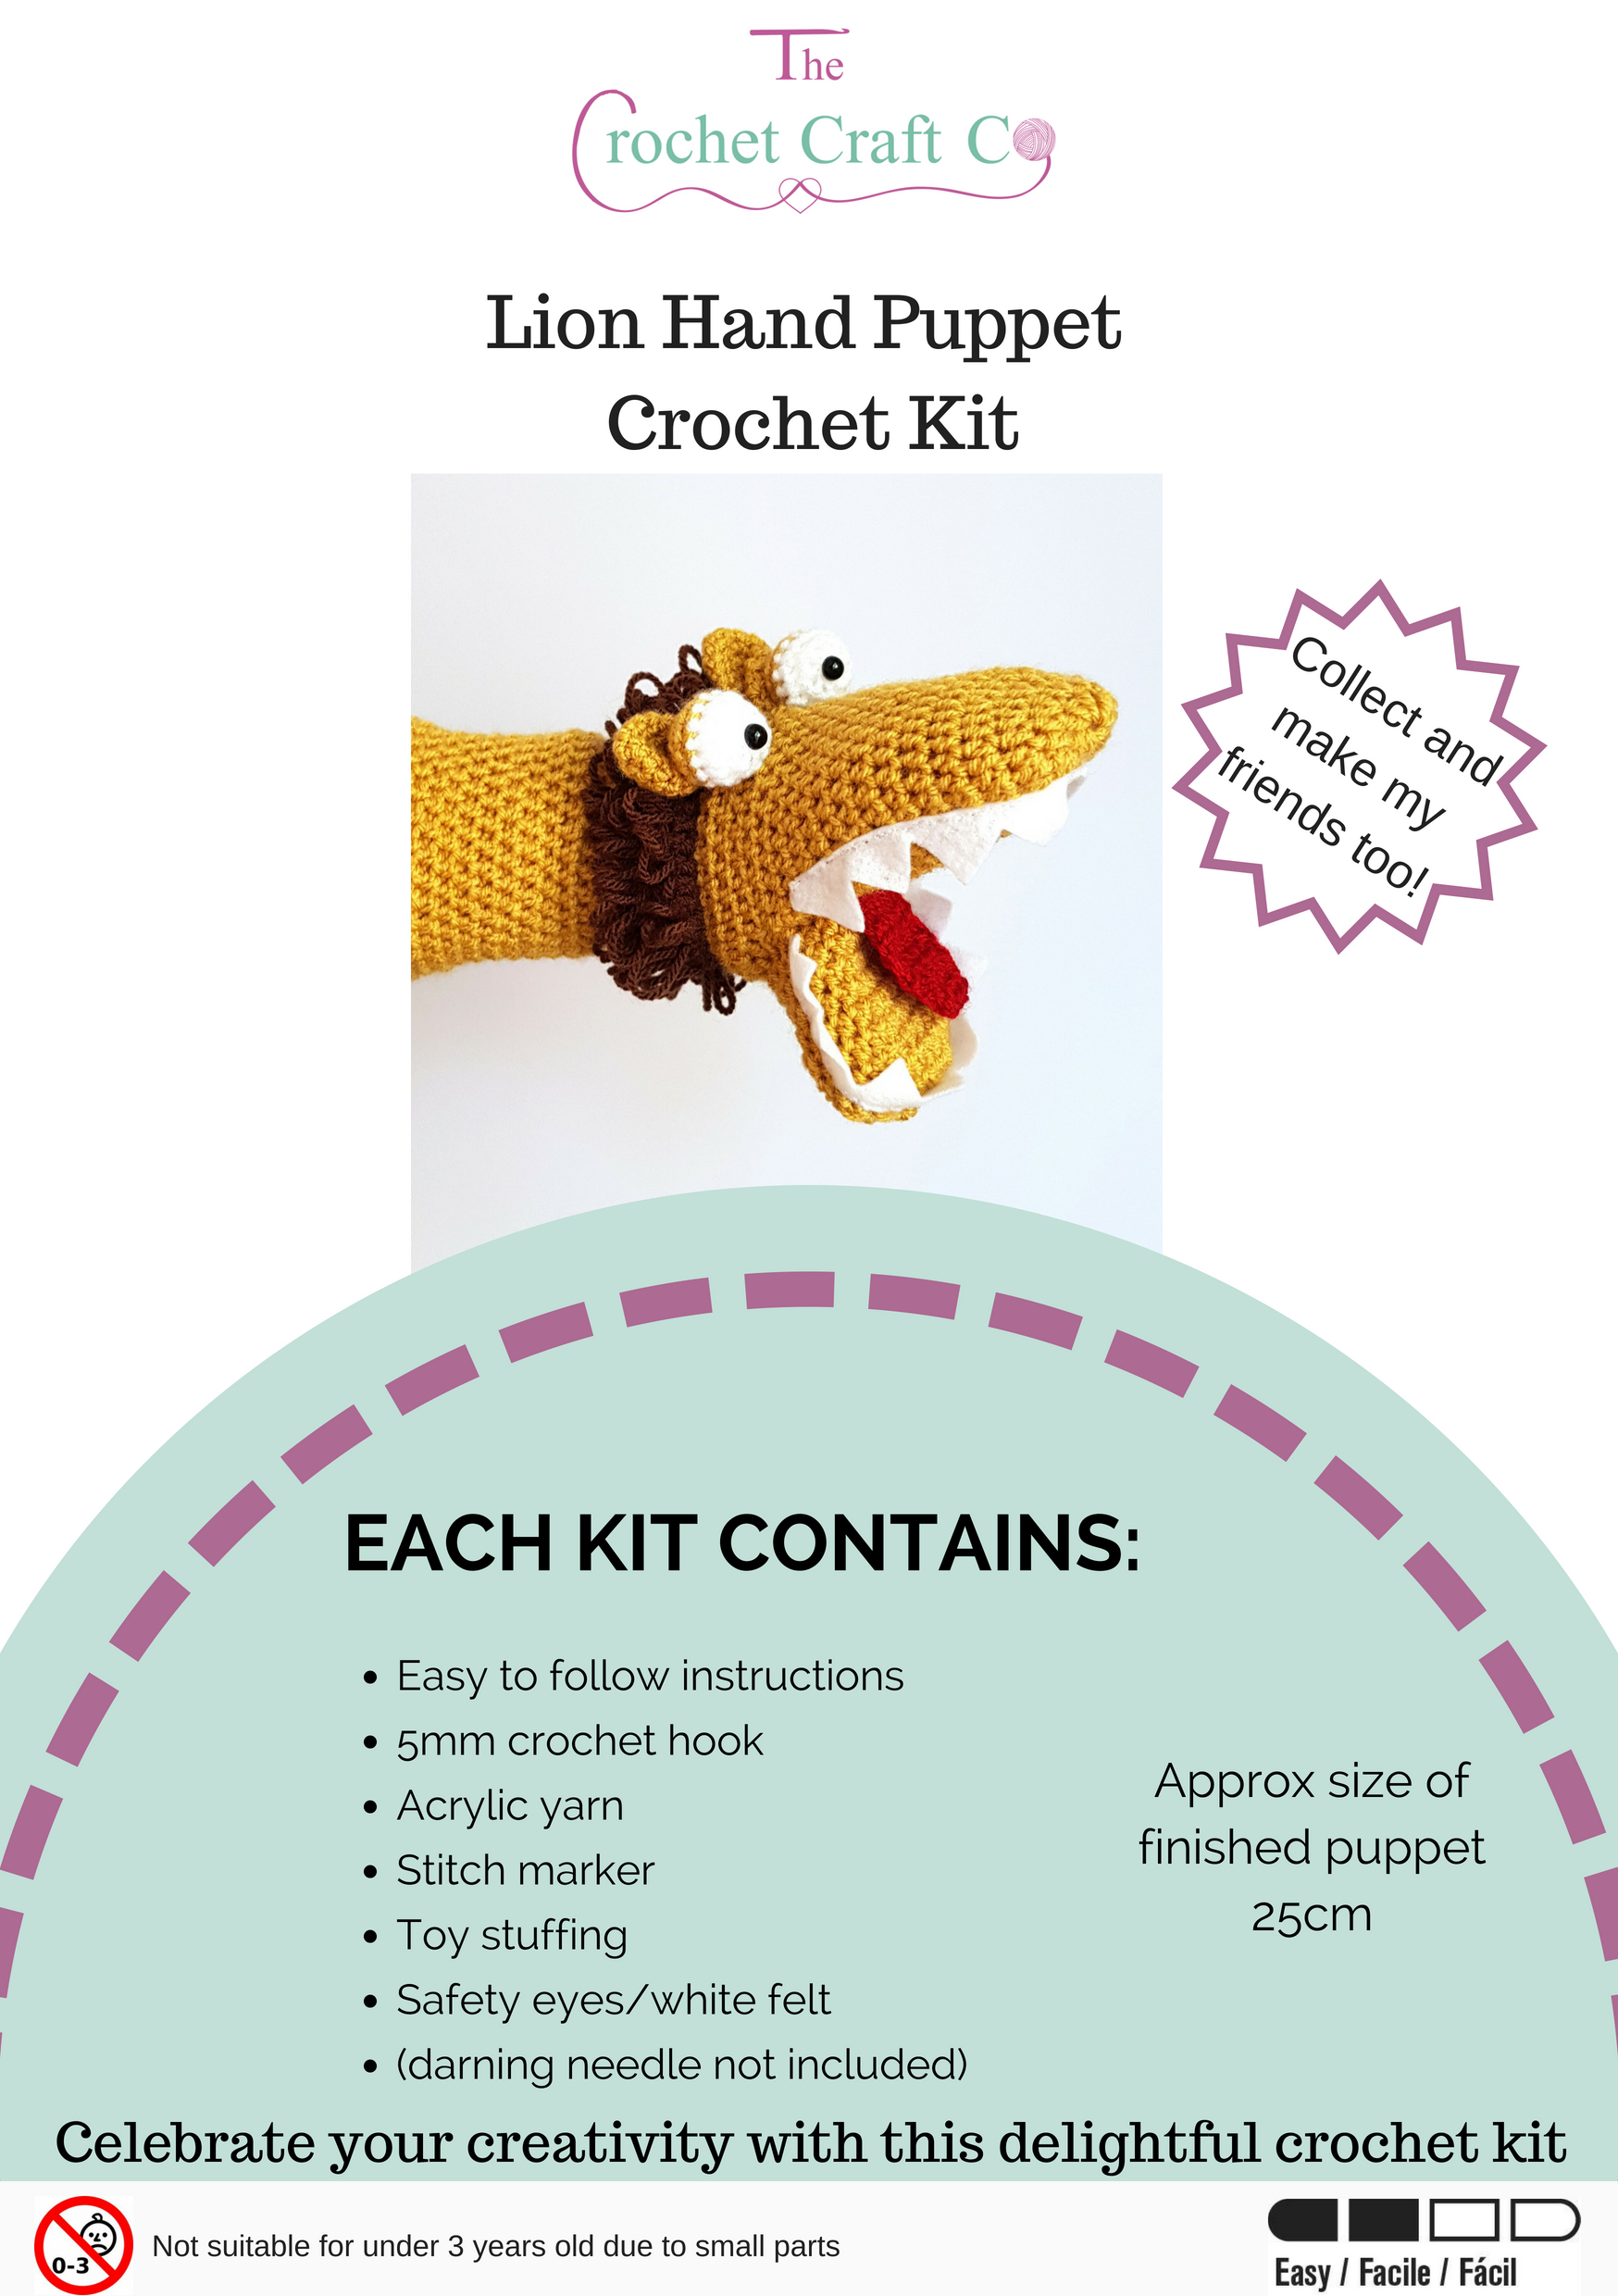 Crochet Kit - Lion Hand Puppet - The Crochet Craft Co